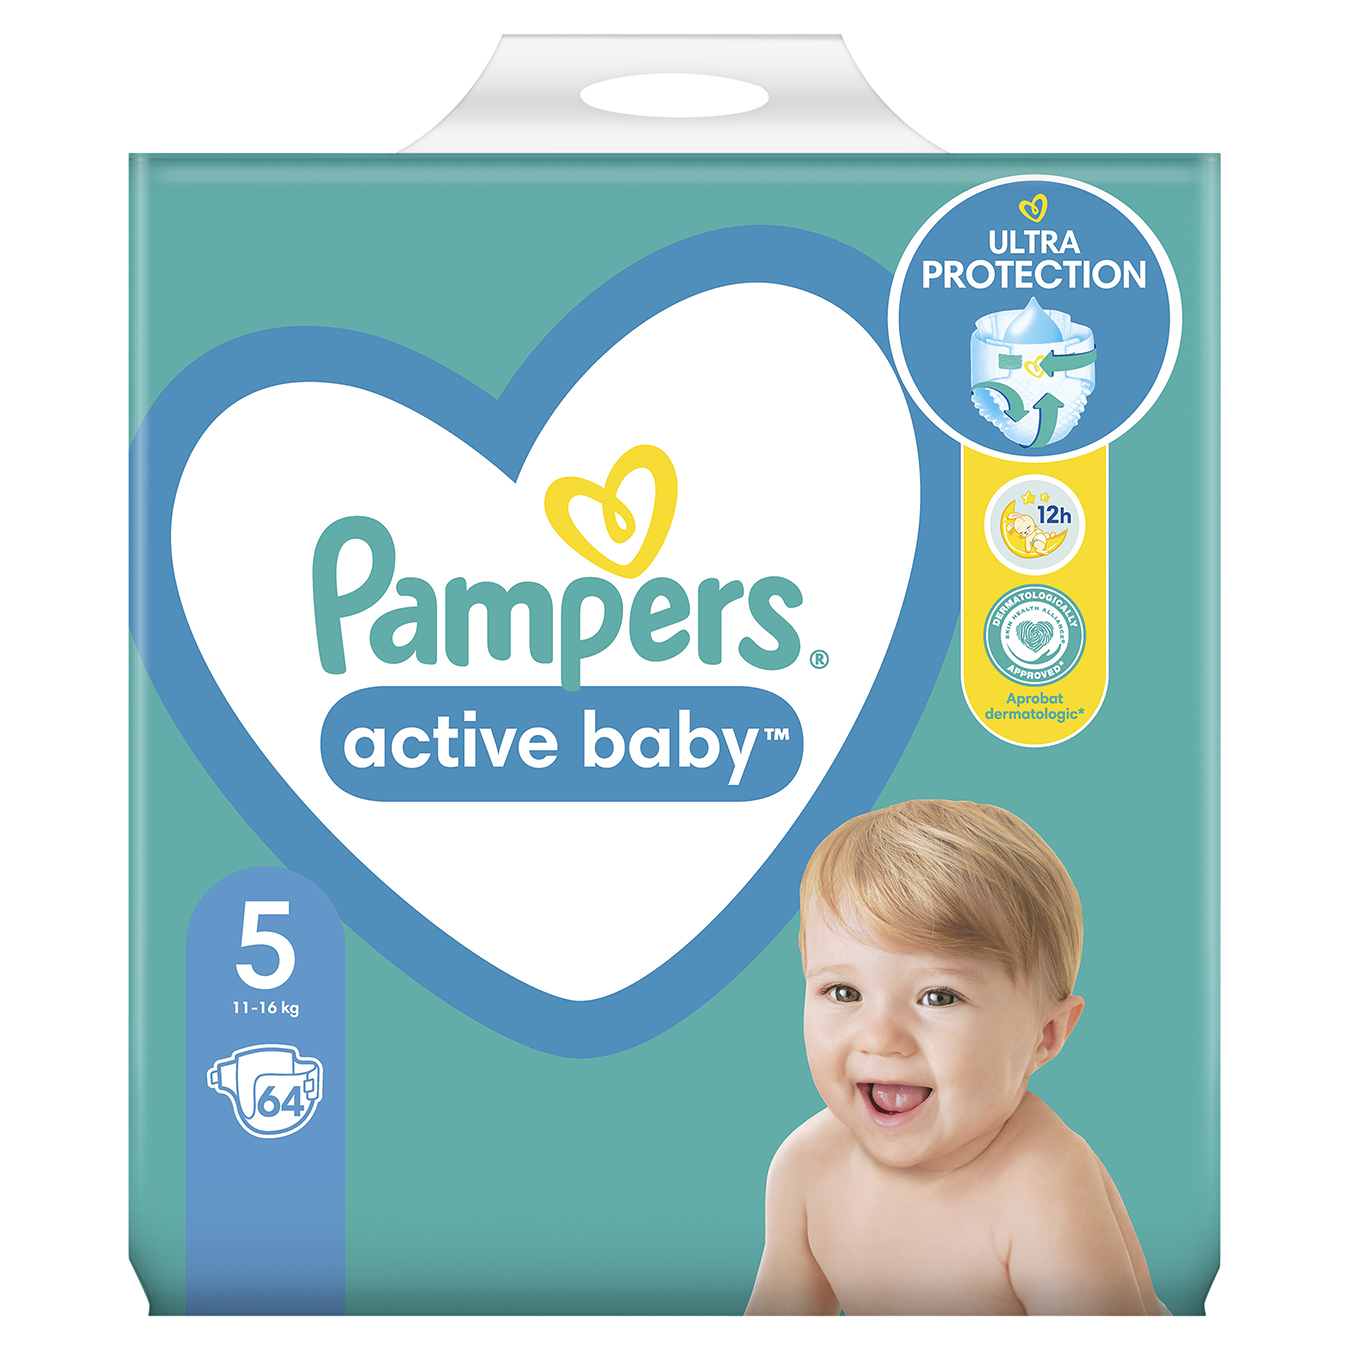 Подгузники детские Pampers одноразовые Active Baby Junior (11-16 кг) джайнт 64